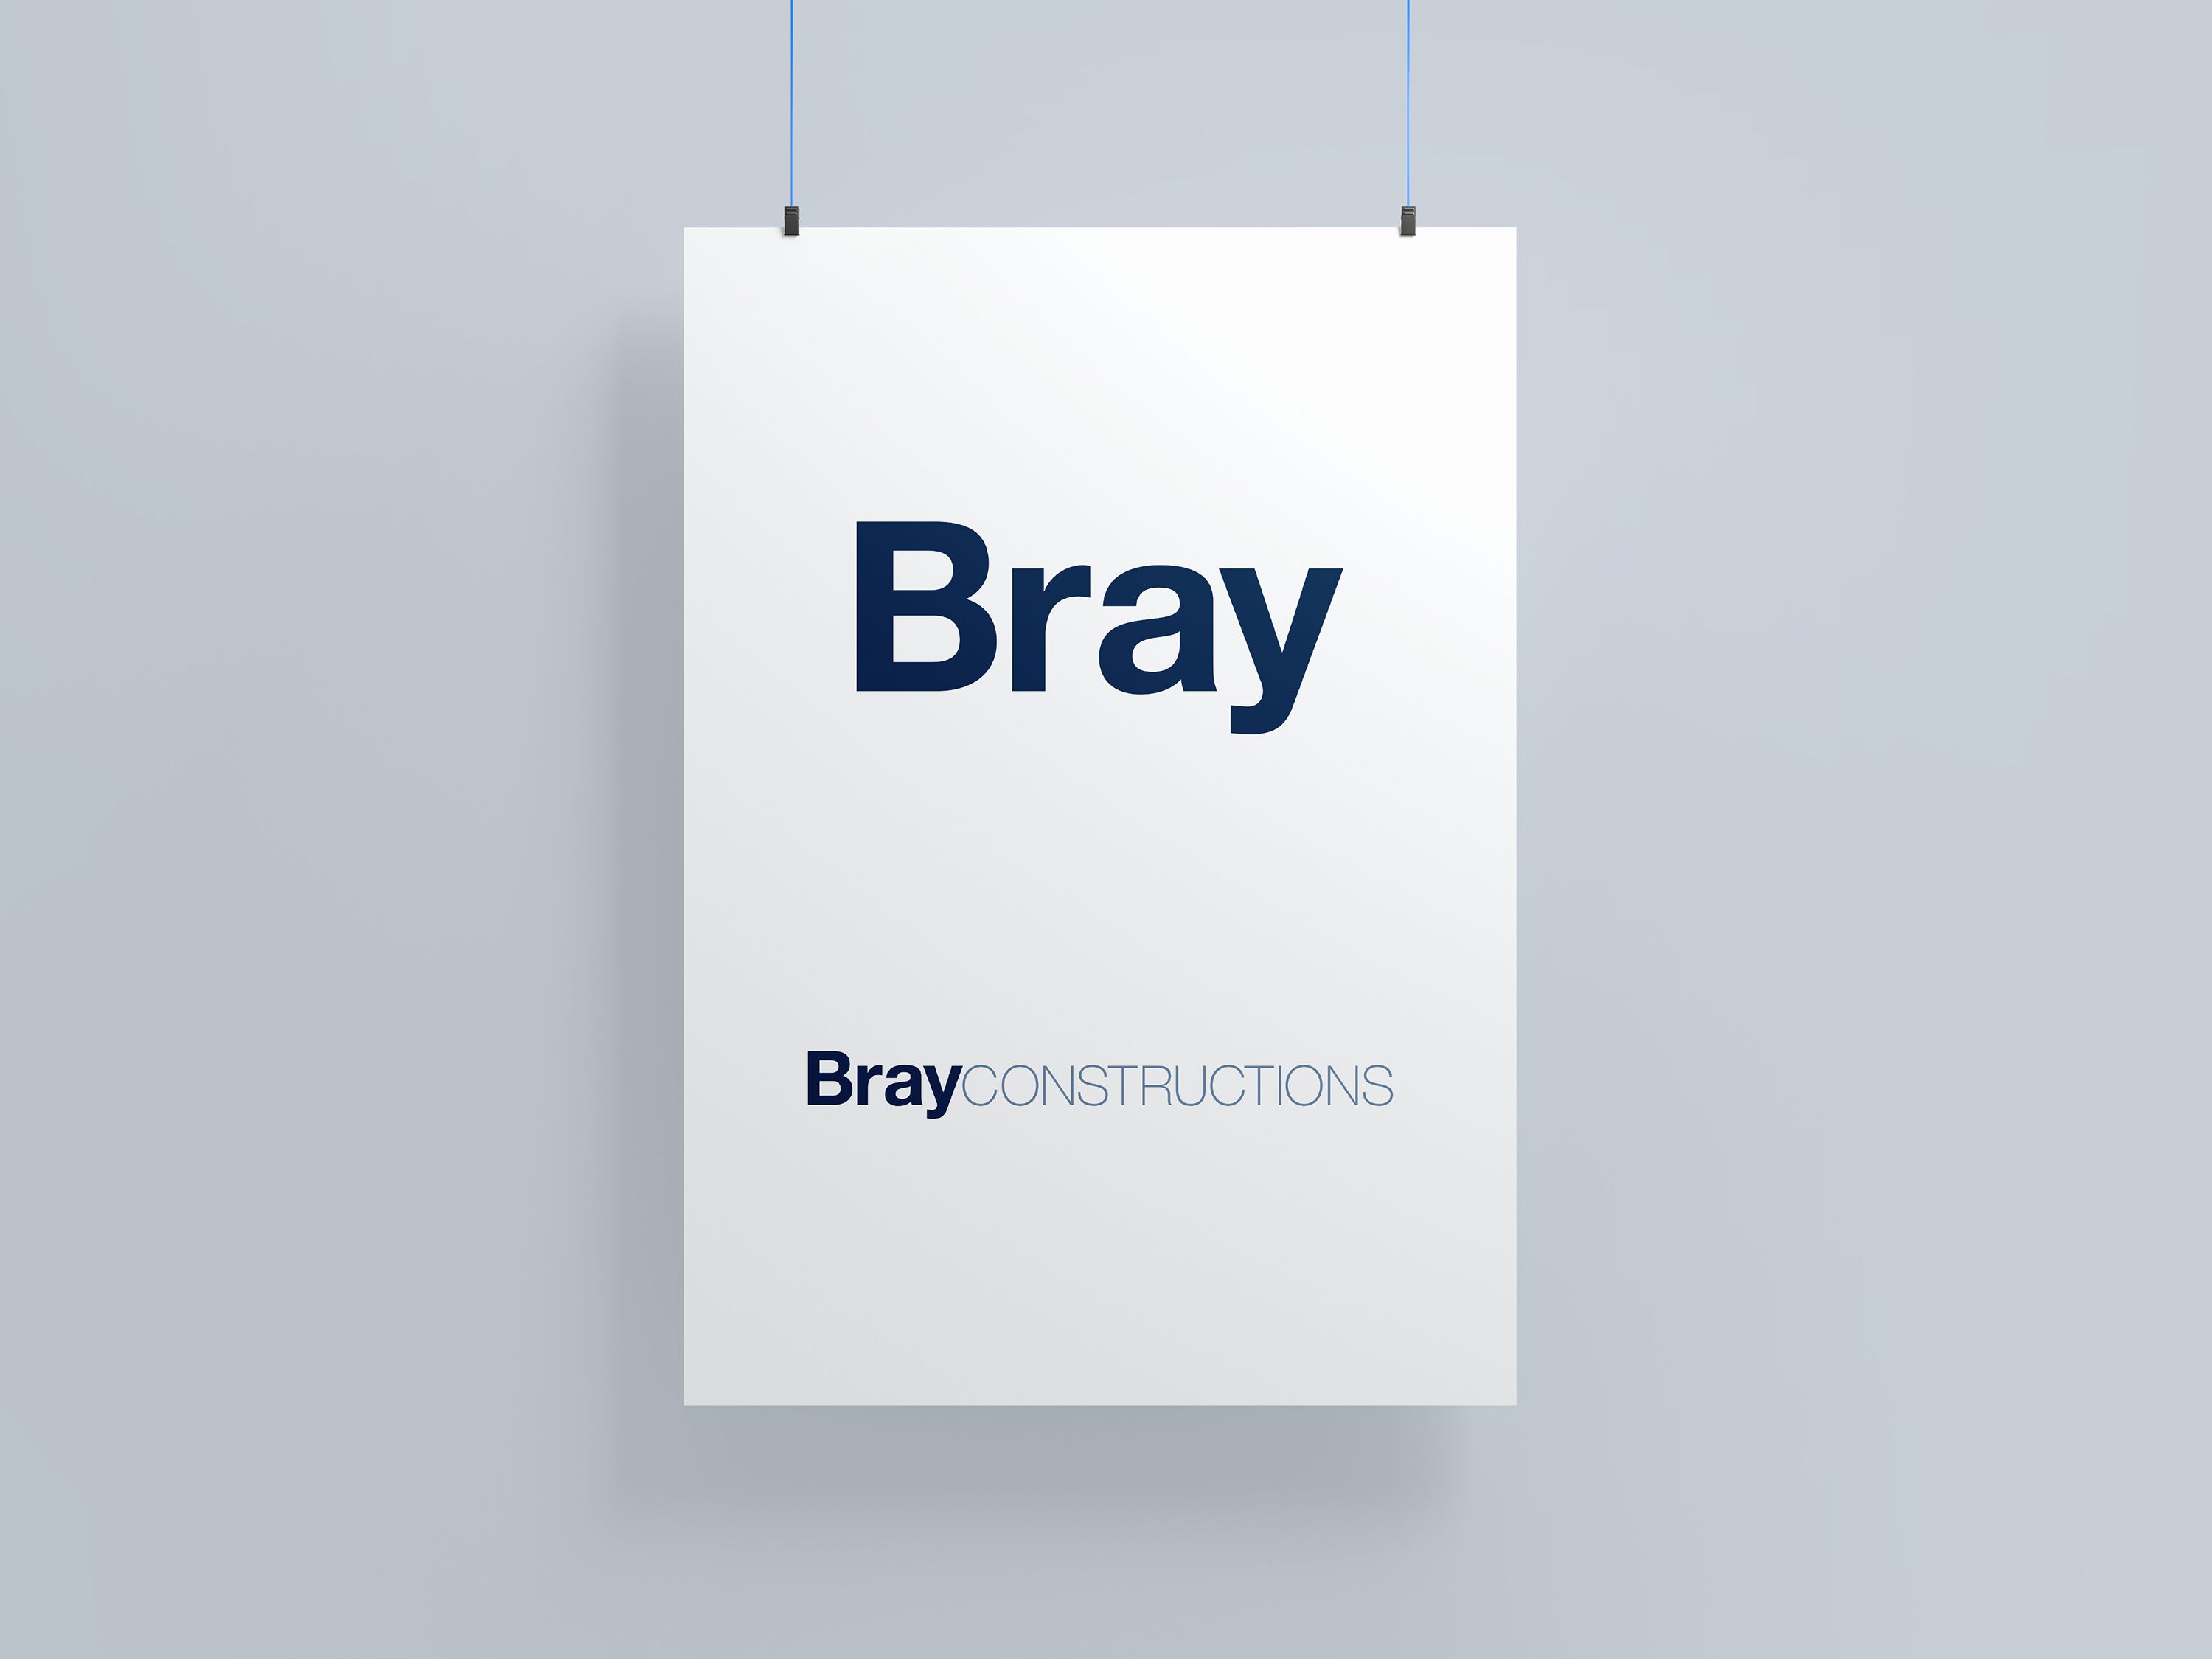 Bray-Constructions colour logo version